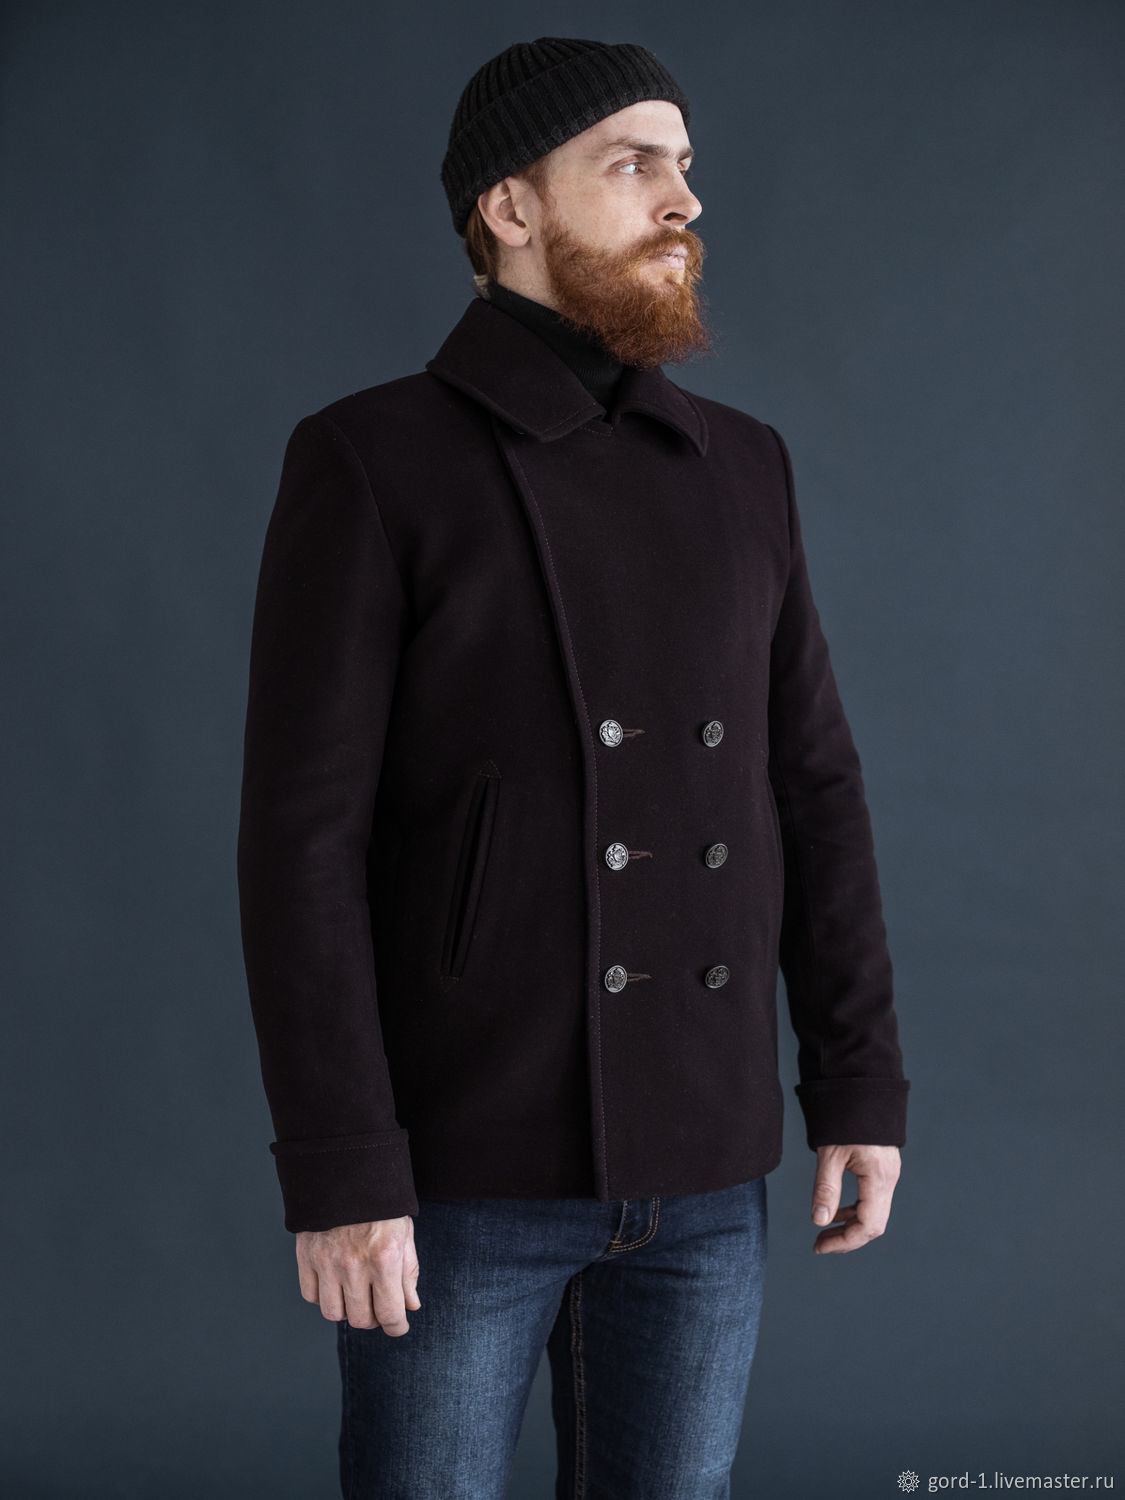 С чем носить мужское пальто, идеи для стильного образа.